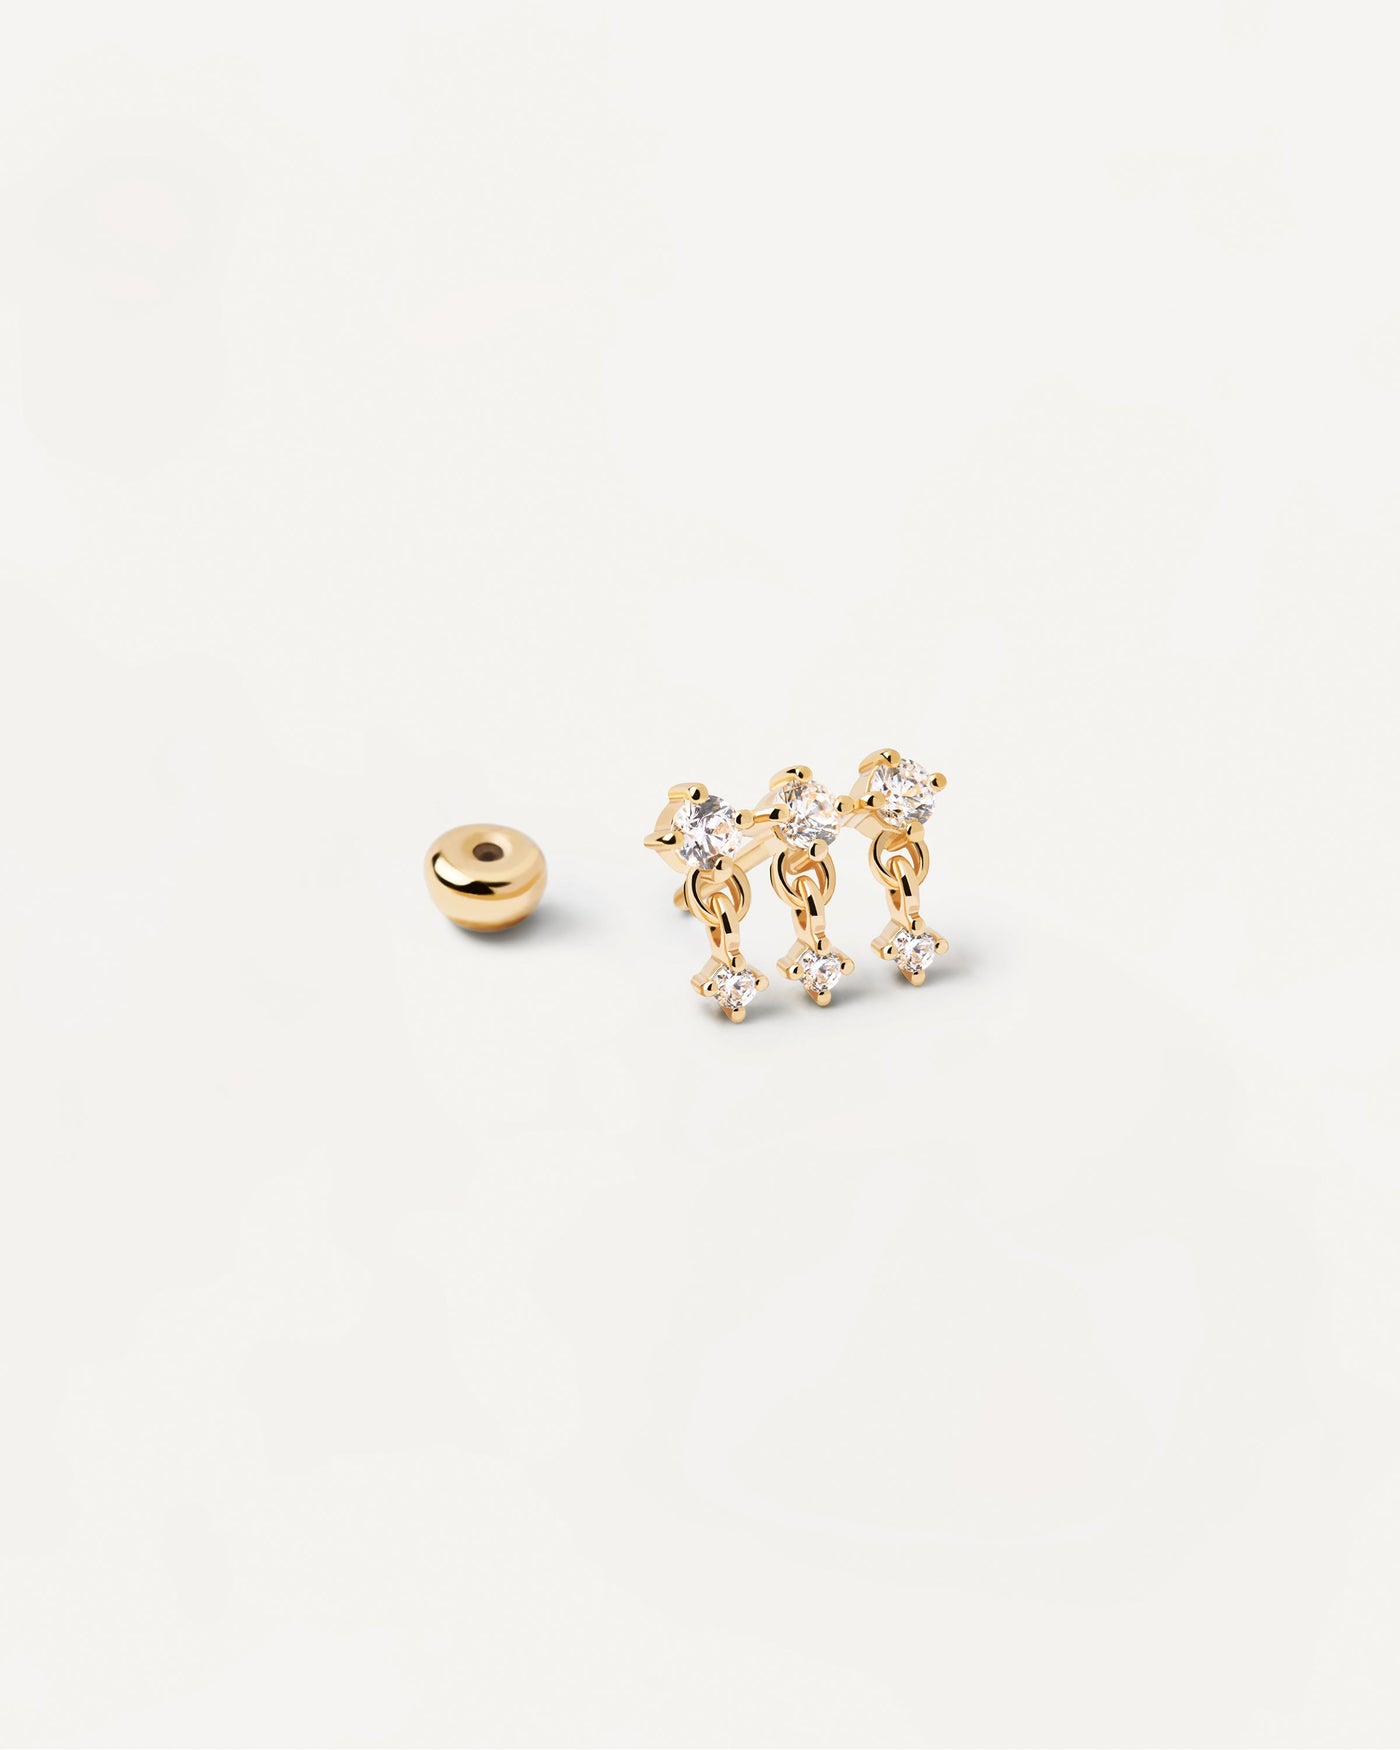 Sol Einzelner Ohrring. Wellenförmiger vergoldeter Piercing-Ohrring mit drei weißen Zirkonias. Erhalten Sie die neuesten Produkte von PDPAOLA. Geben Sie Ihre Bestellung sicher auf und erhalten Sie diesen Bestseller.